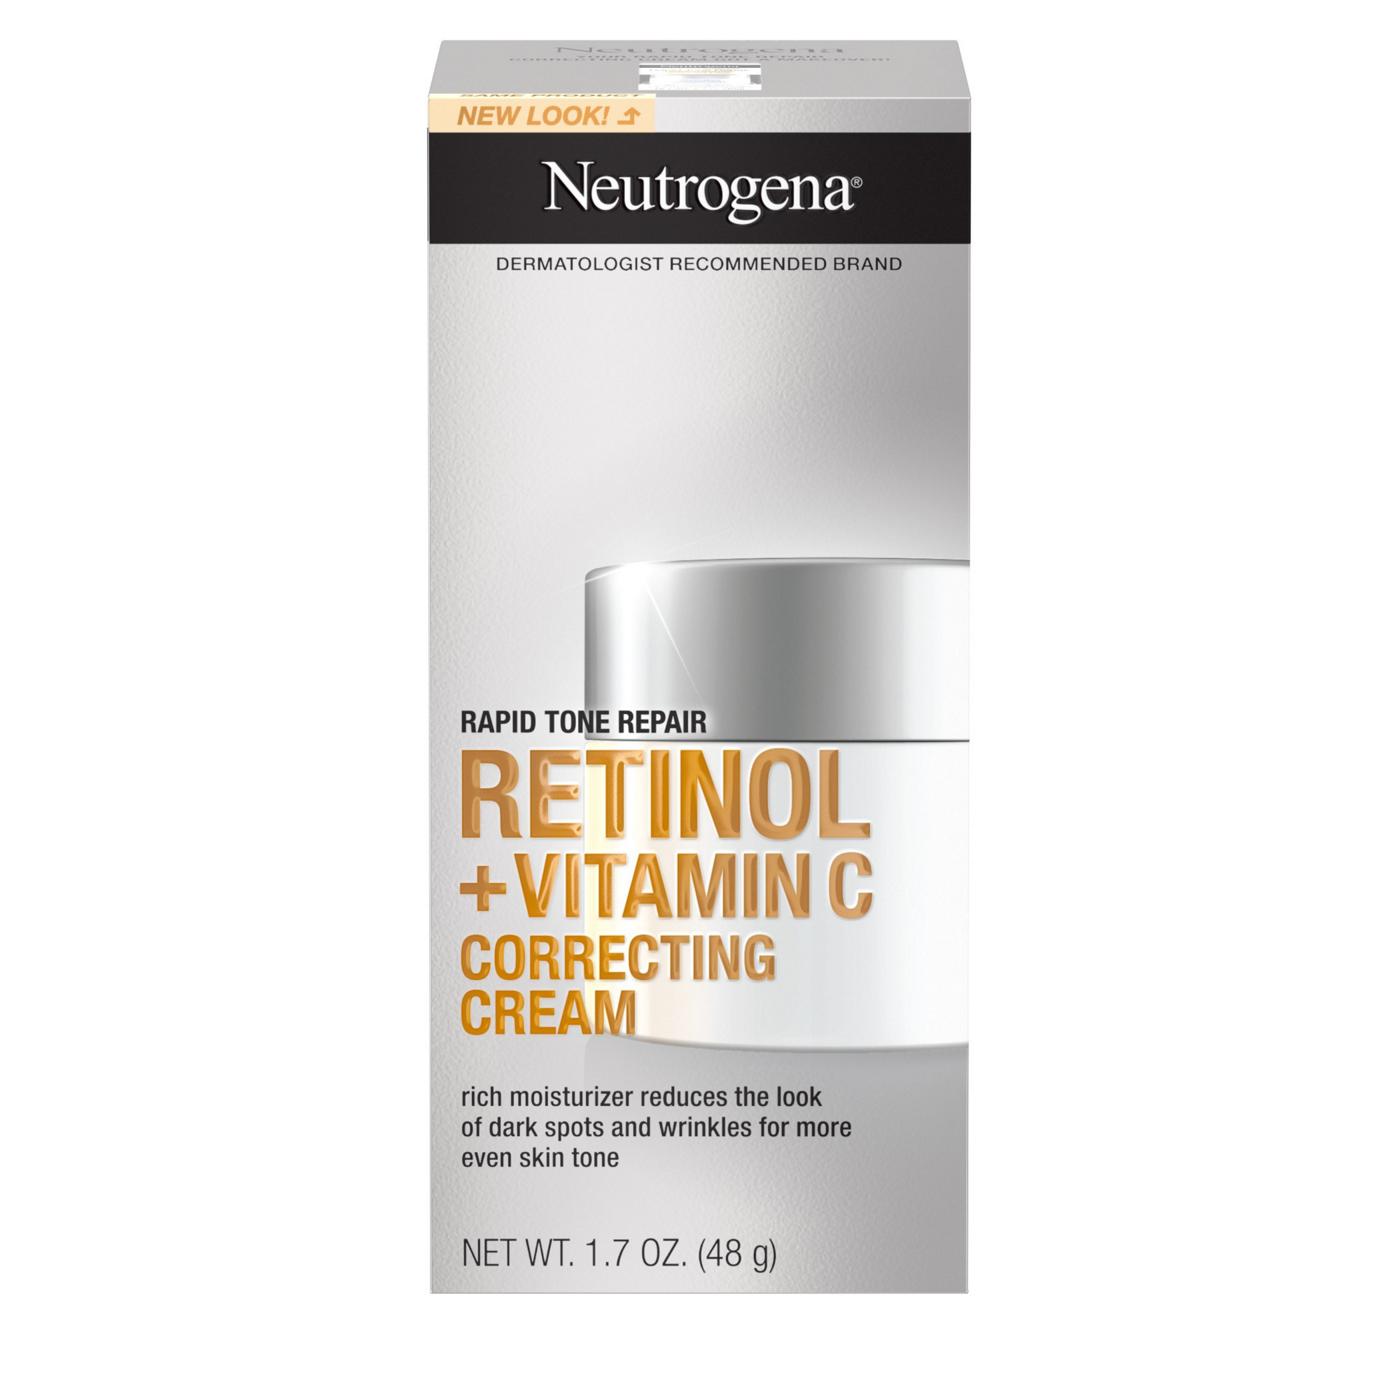 Neutrogena Rapid Tone Repair Retinol + Vitamin C Correcting Cream; image 1 of 8